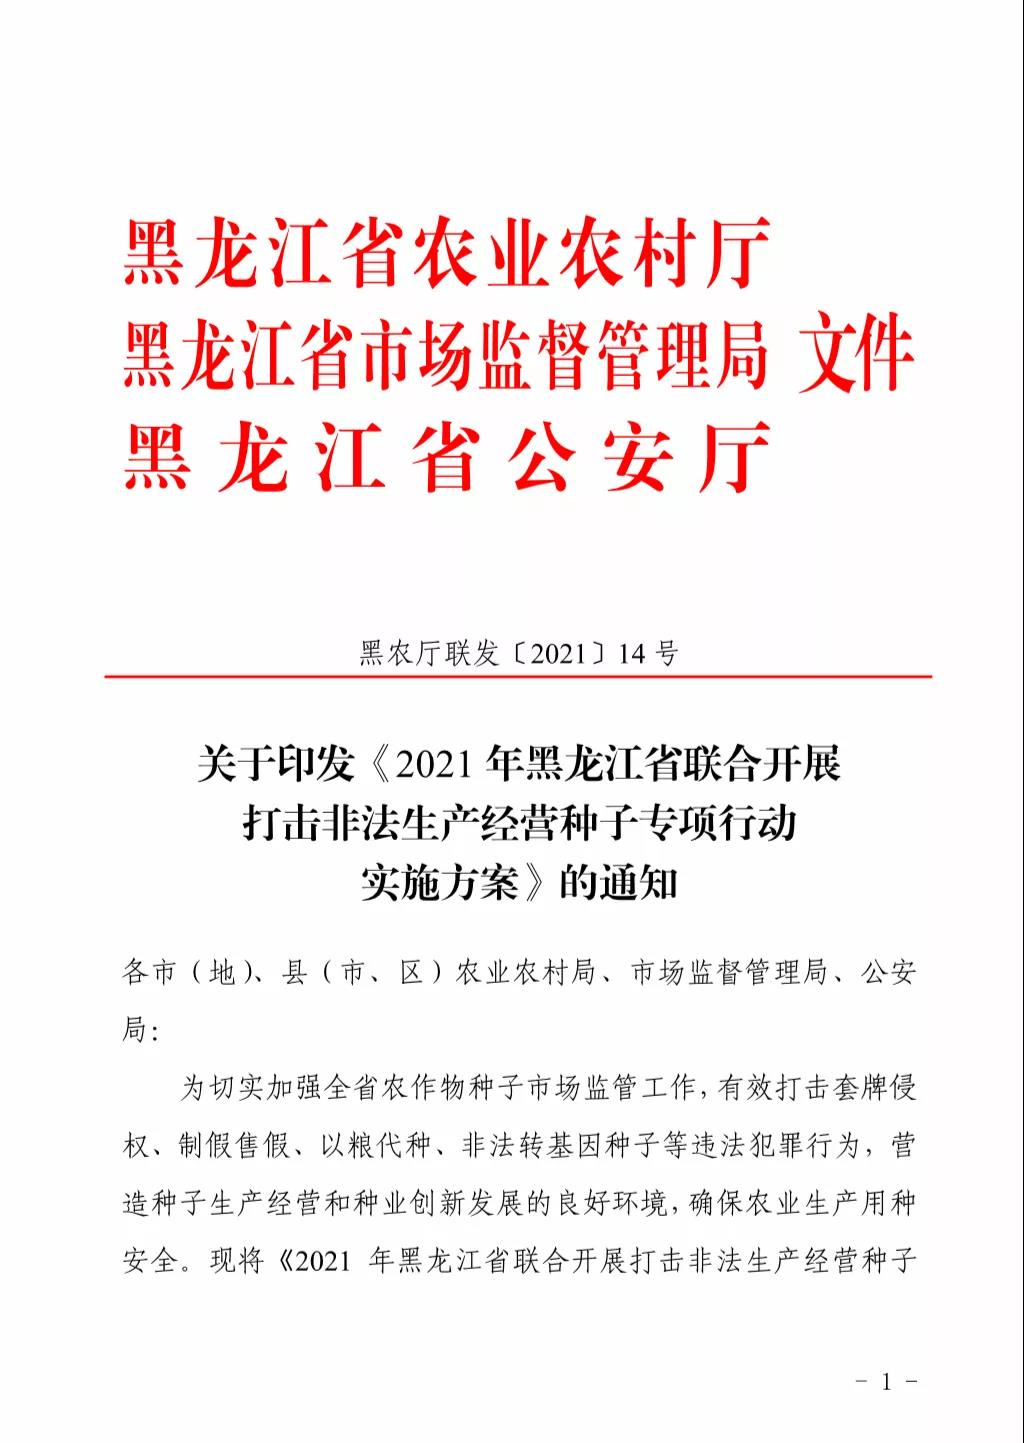 关于印发《2021年黑龙江省联合开展打击非法生产经营种子专项行动实施方案》的通知